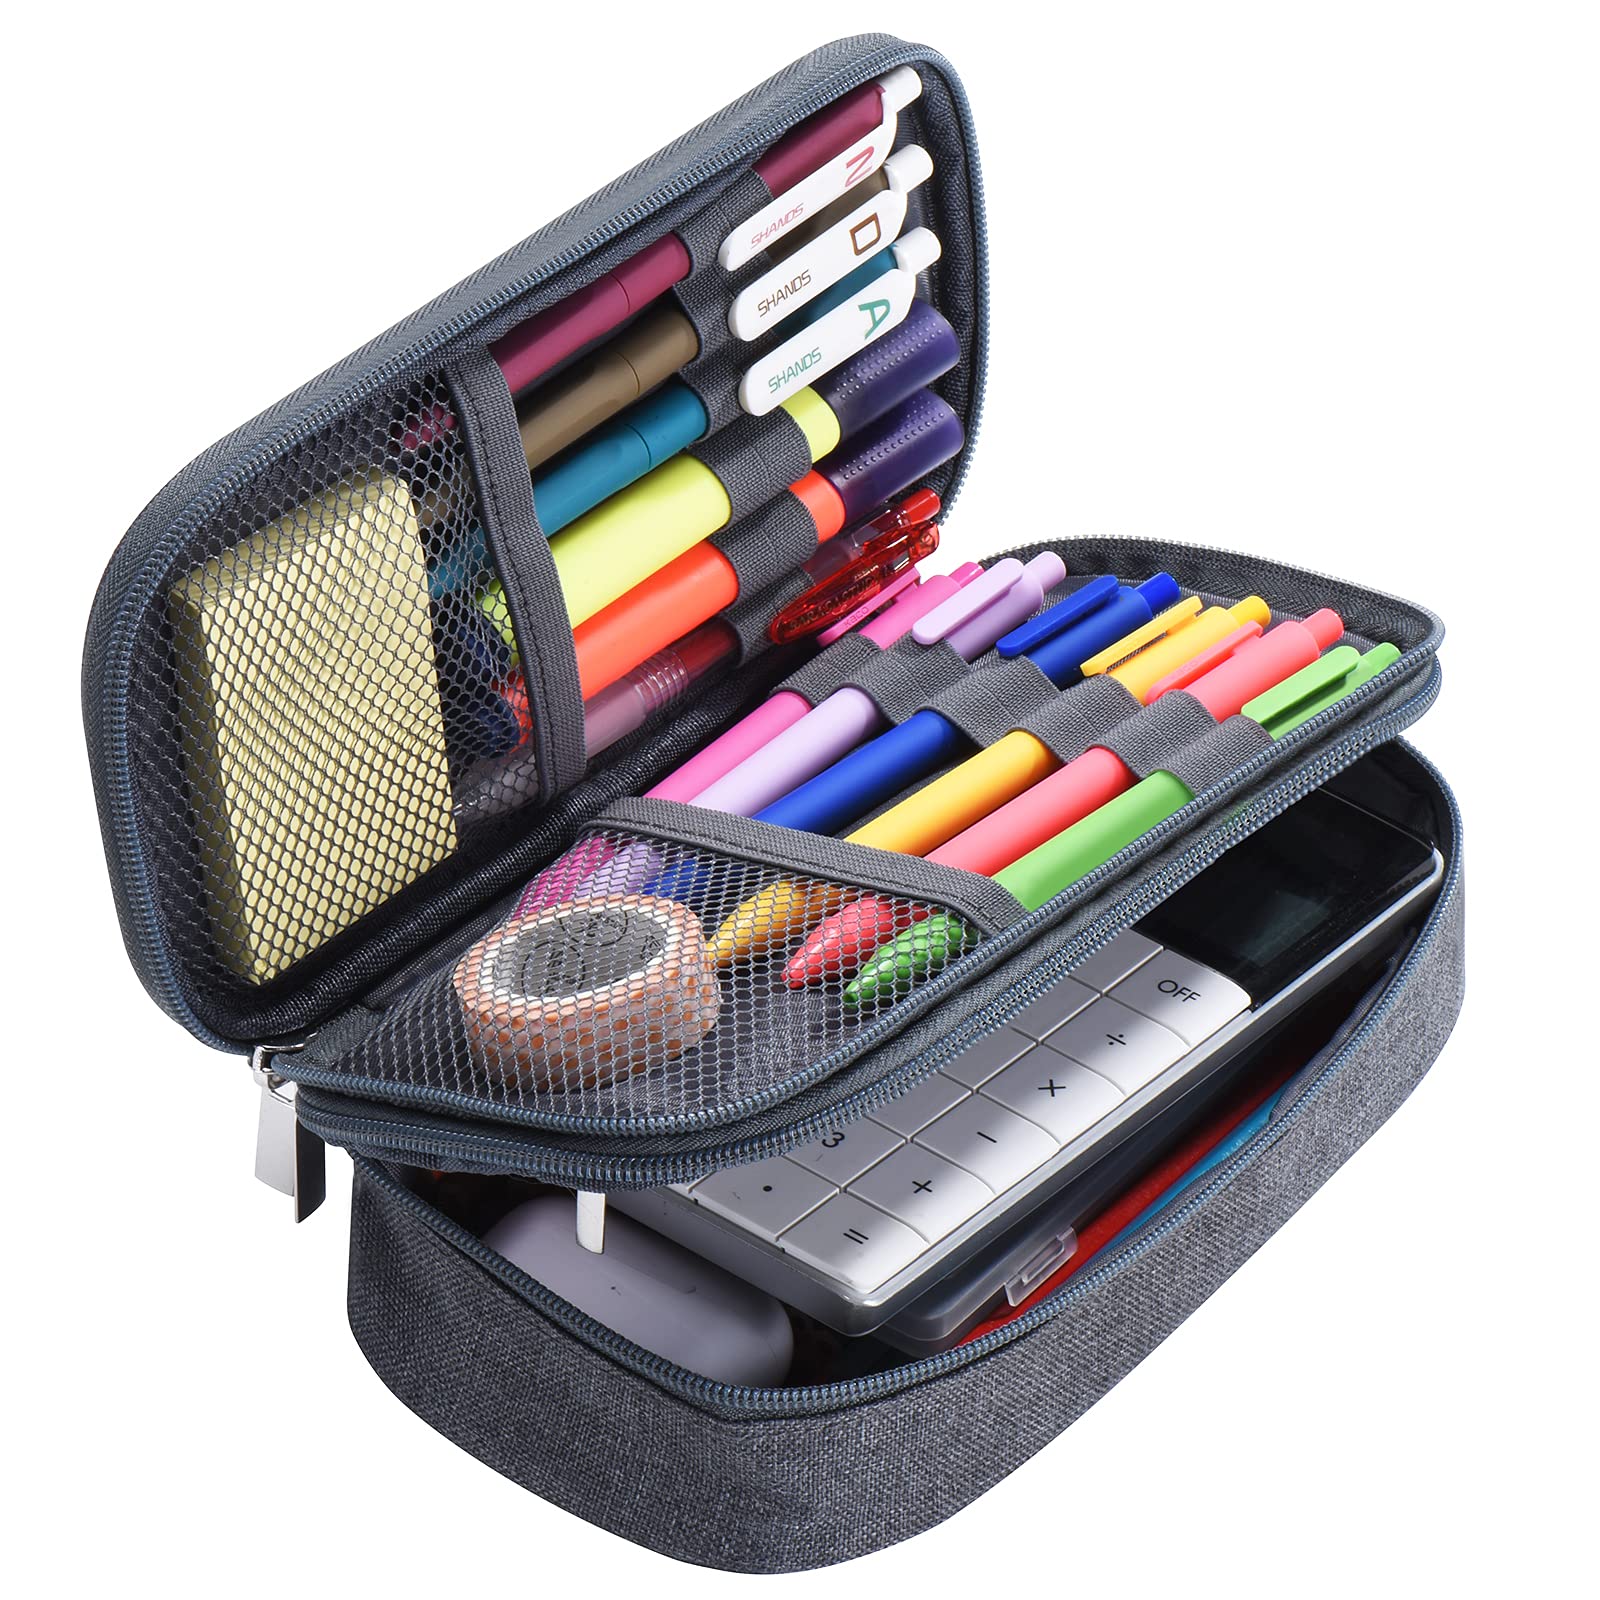 Zcassi Big Capacity Pencil Case 3 Compartments Canvas Bag